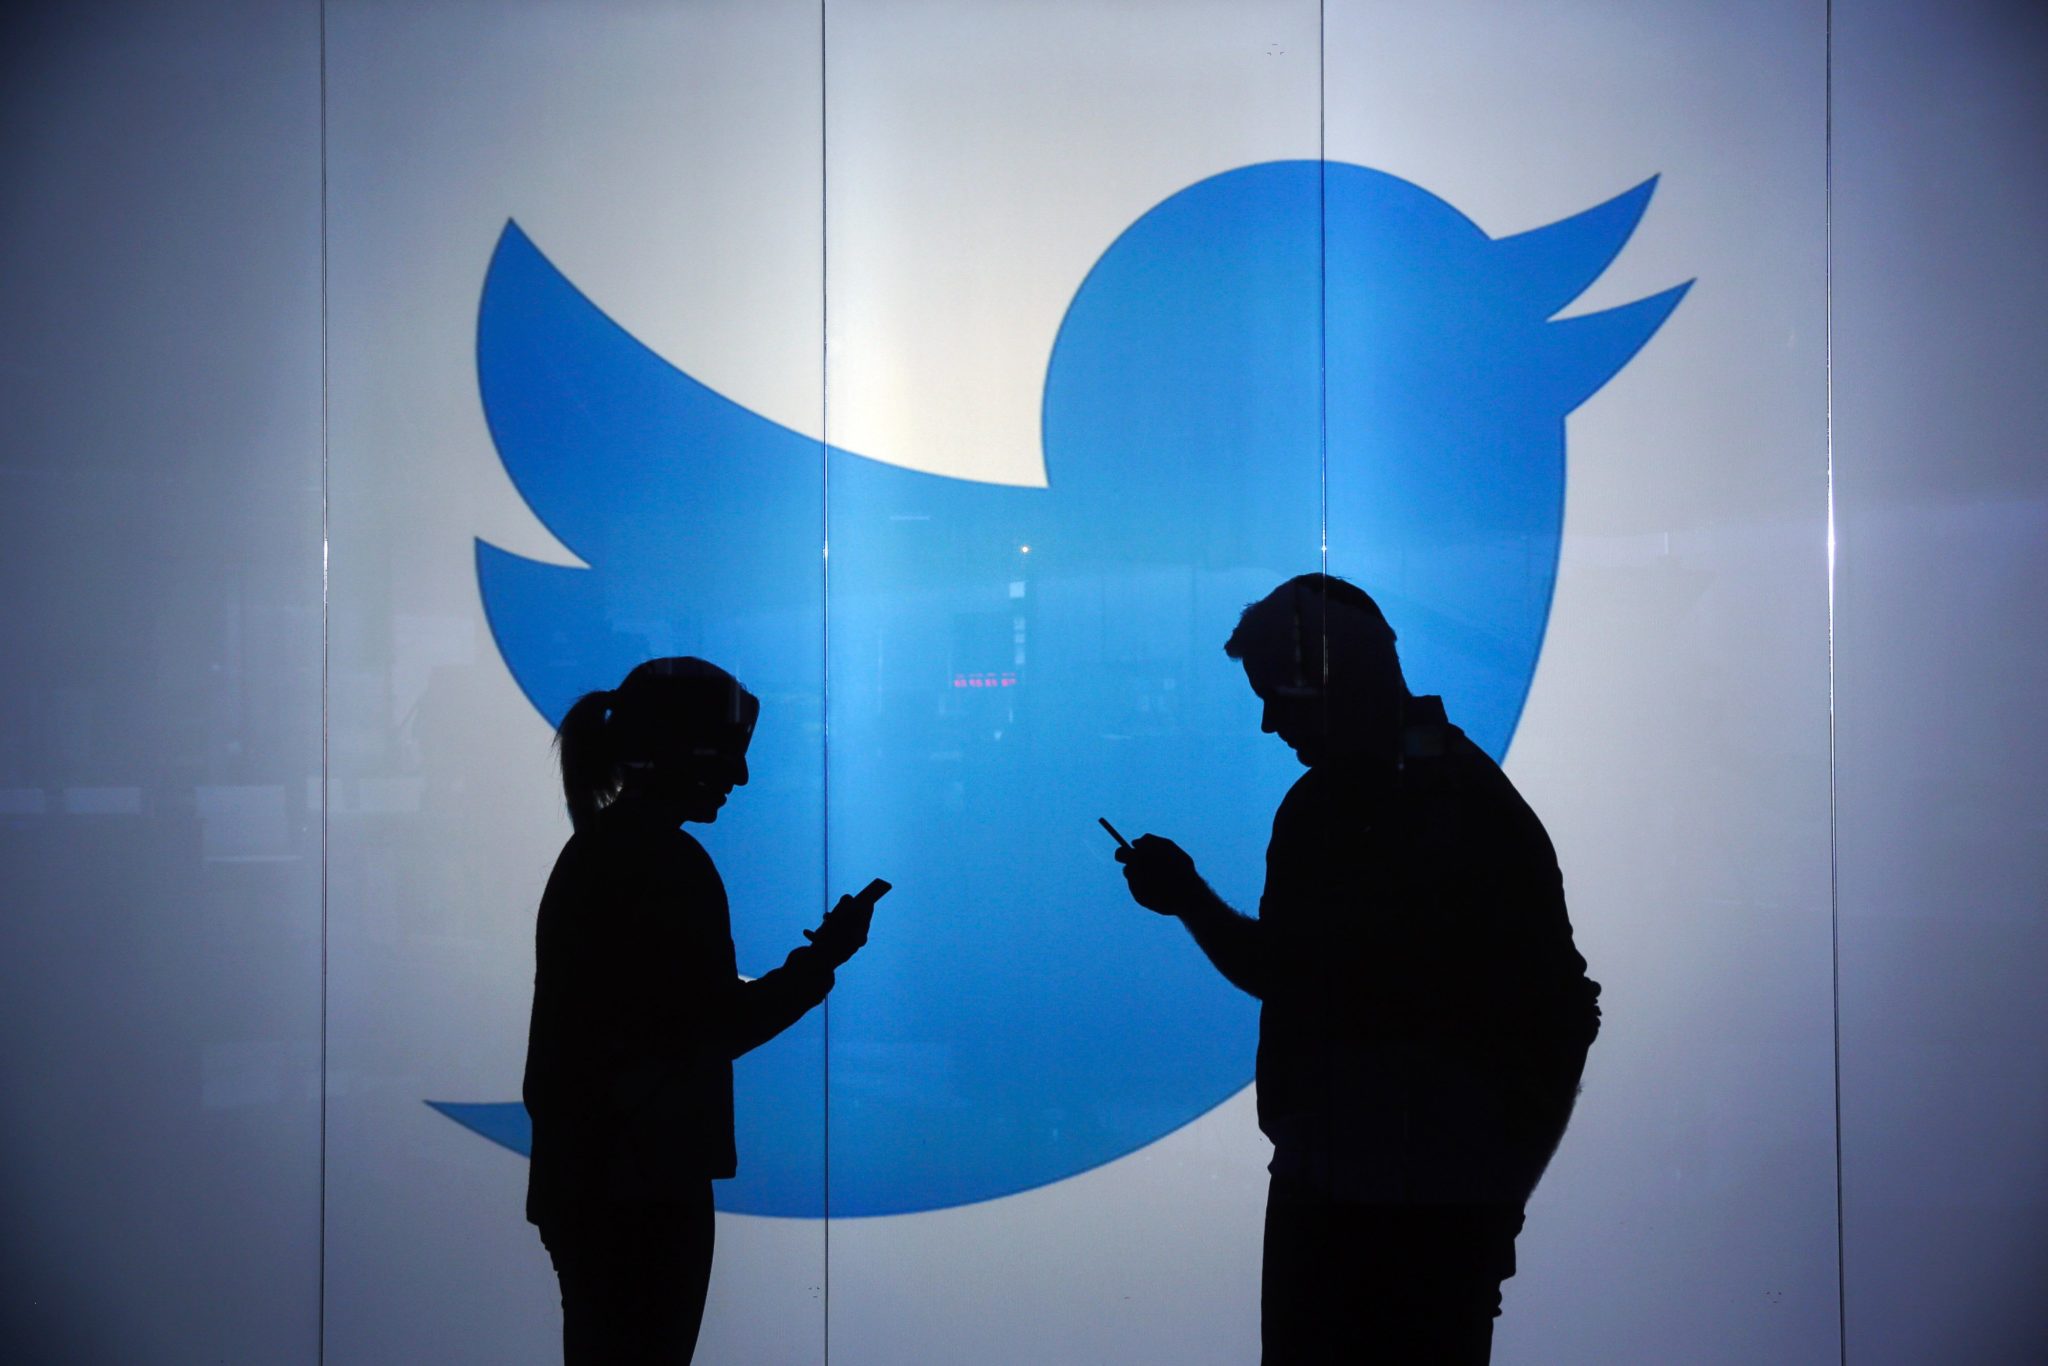 حماية مستخدمين Twitter بأسلوب جديد ضد القرصنة - تقني نت